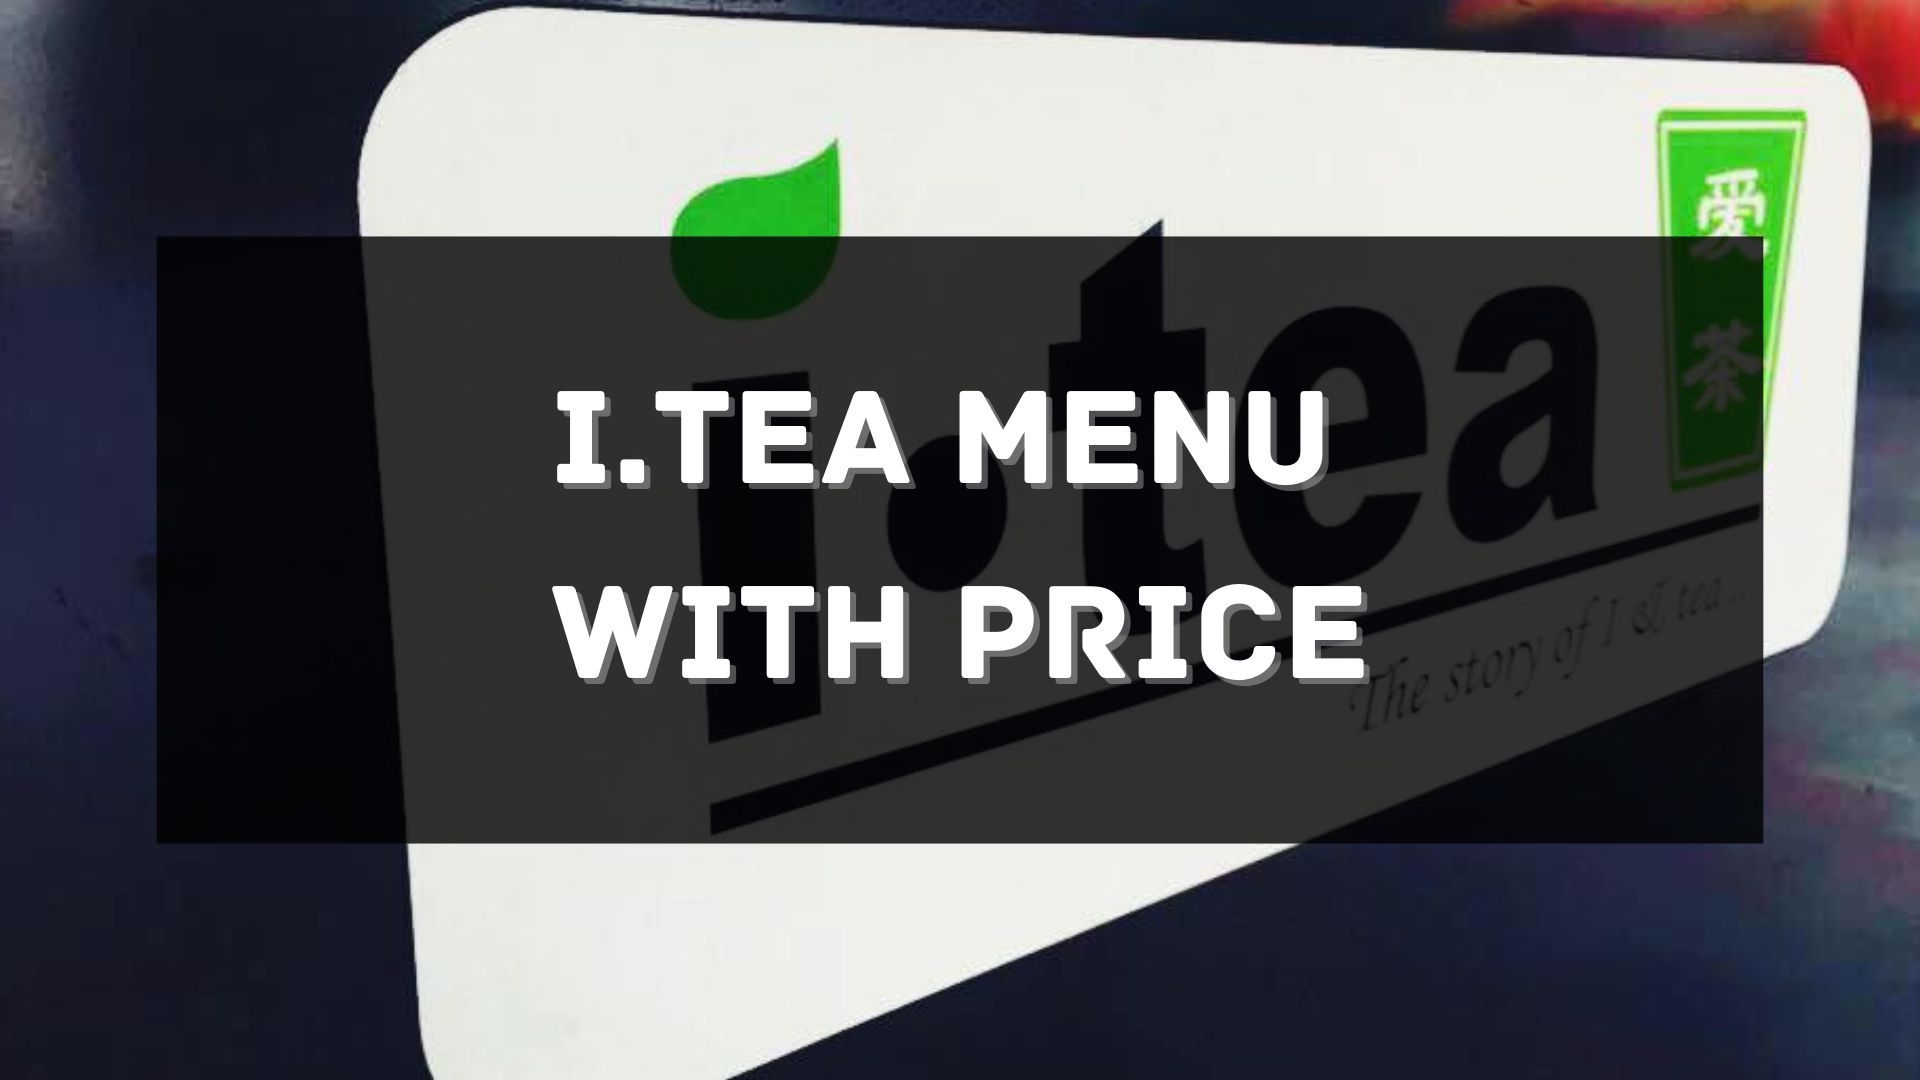 itea menu with price singapore